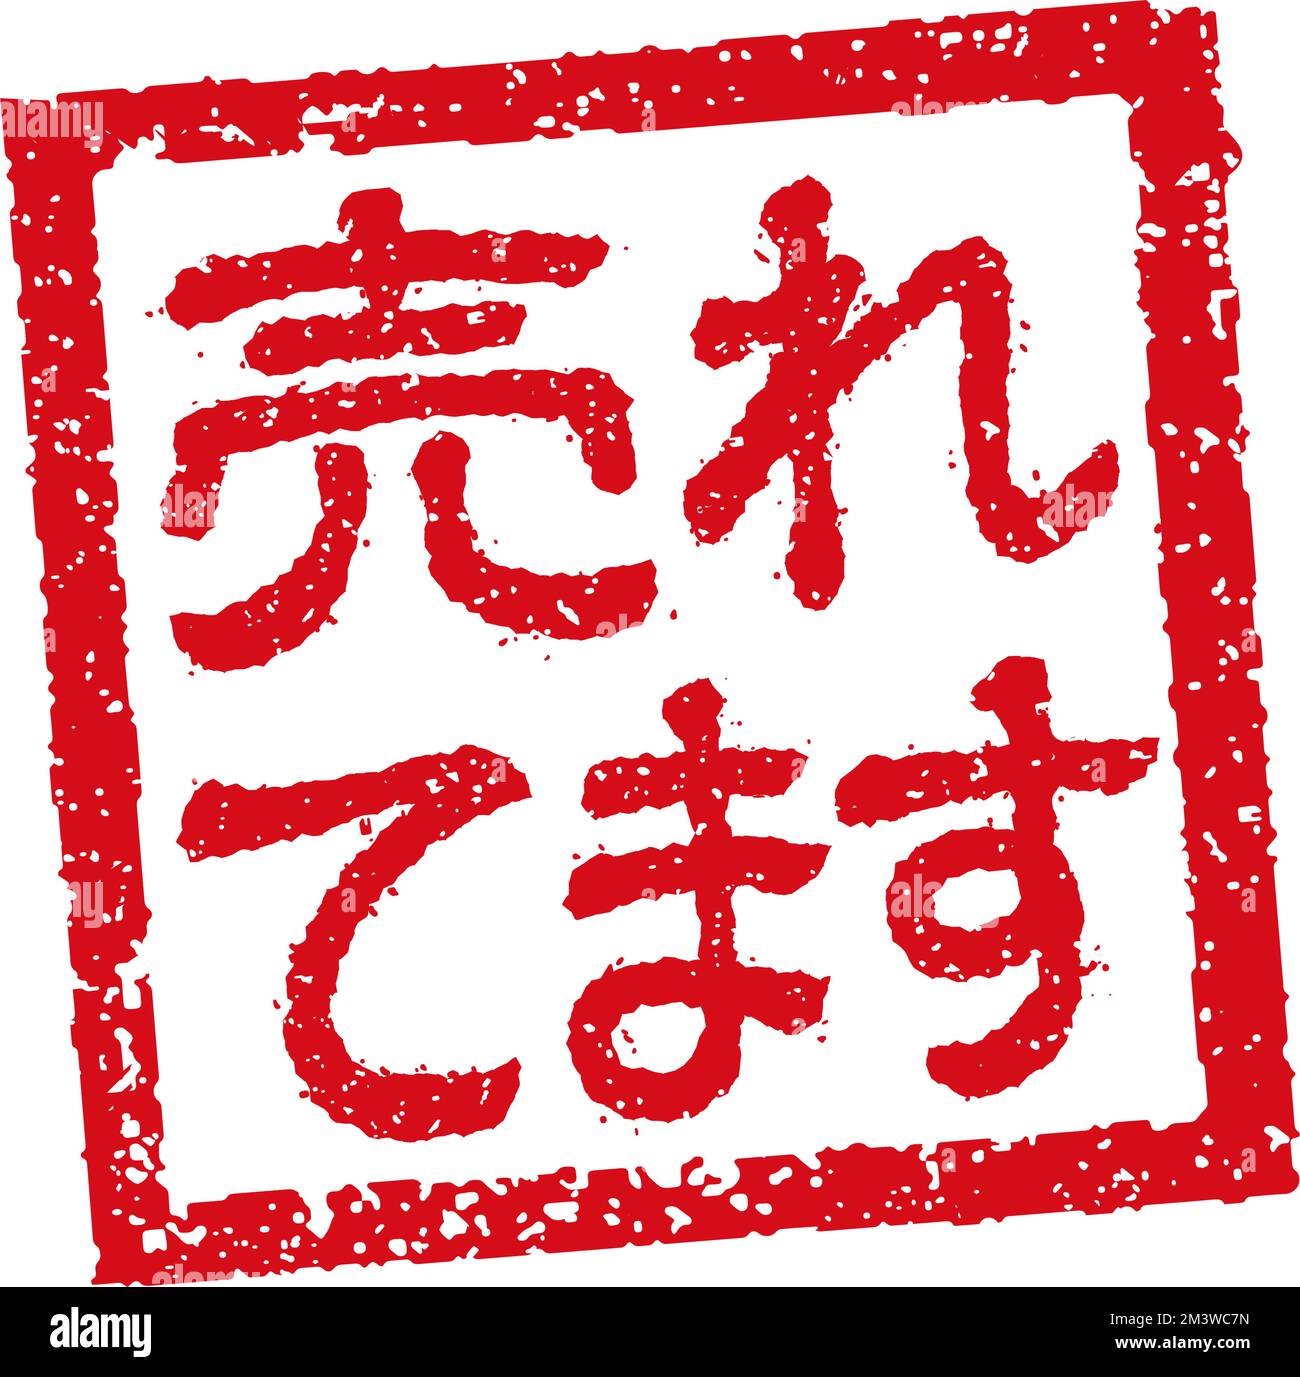 Abbildung von Gummistempeln, die häufig in japanischen Restaurants und Pubs verwendet wird. Usw. | Bestseller Stock Vektor